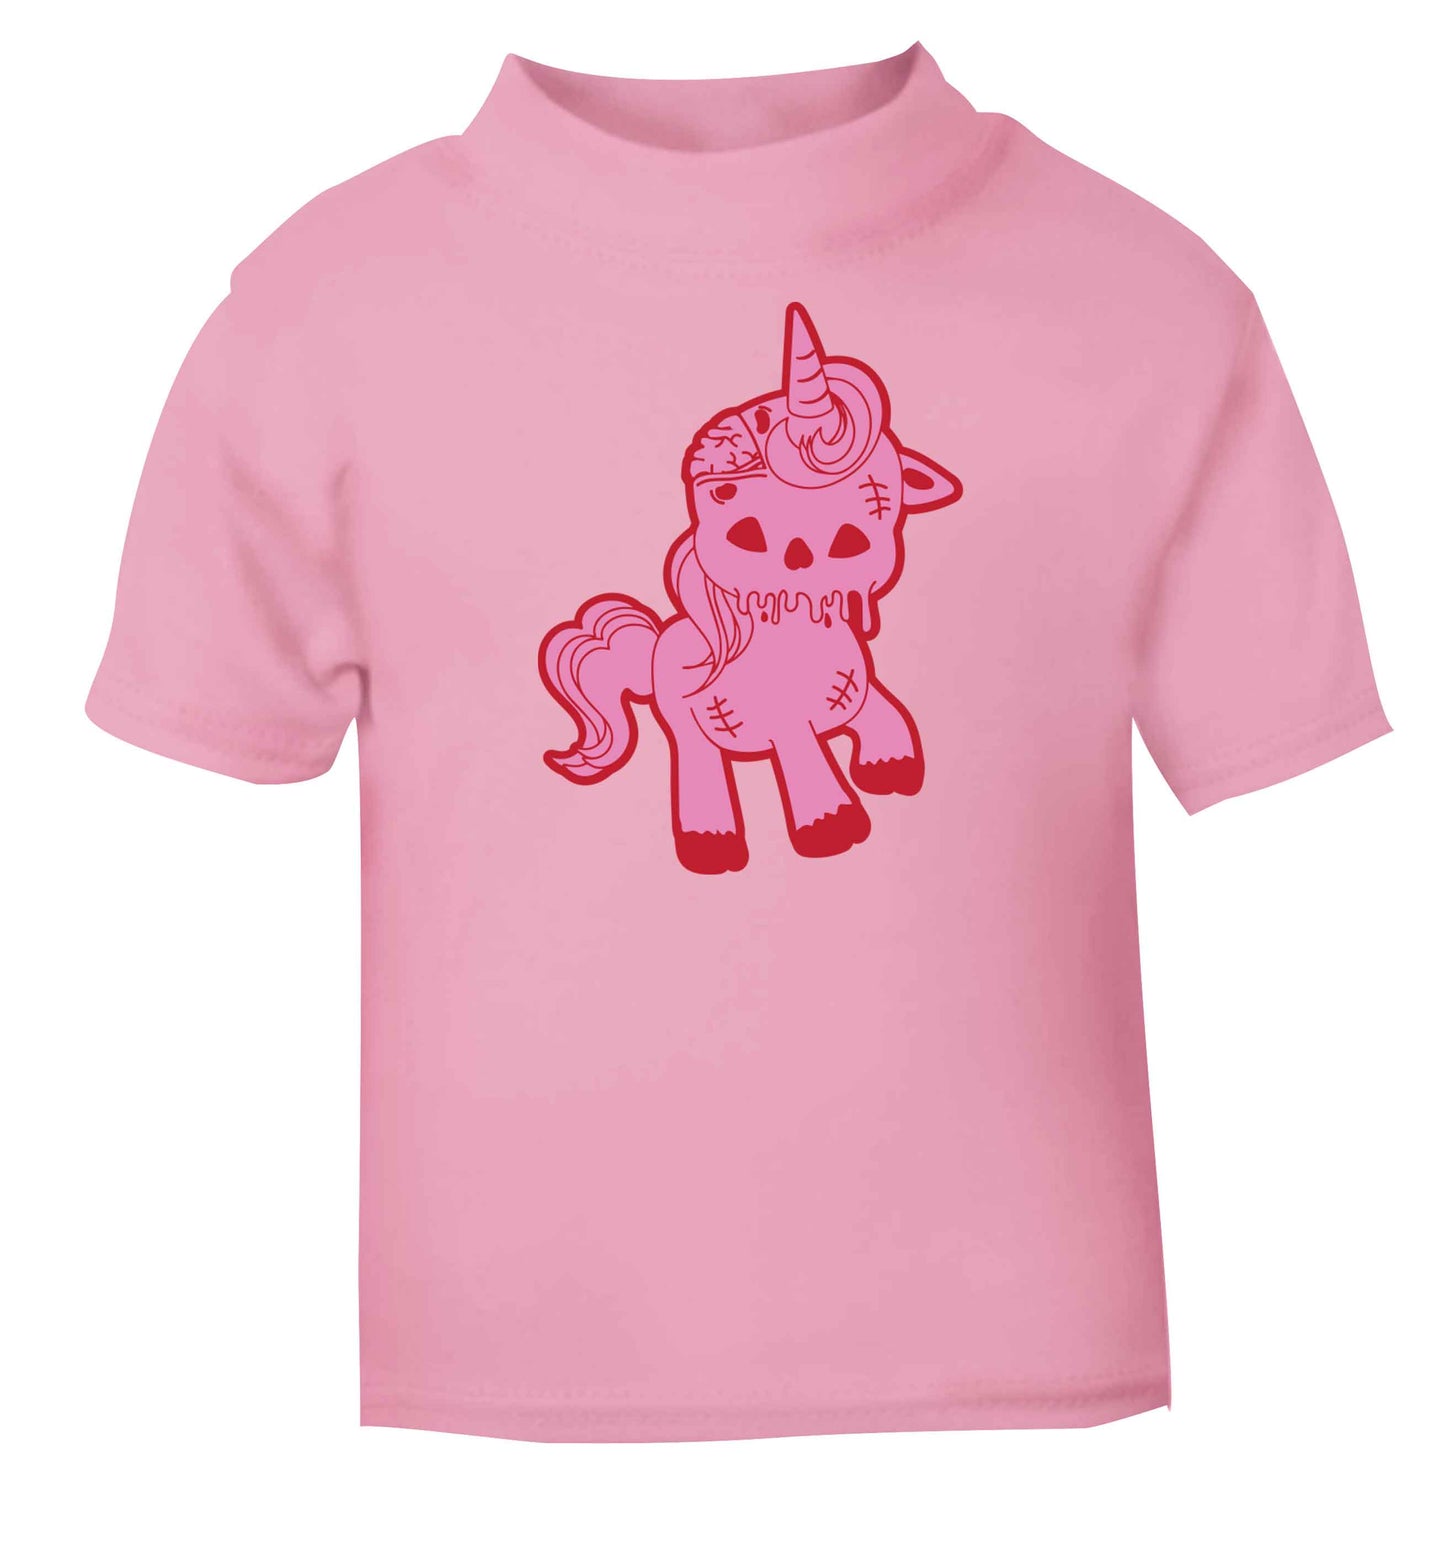 Zombie unicorn zombiecorn light pink baby toddler Tshirt 2 Years